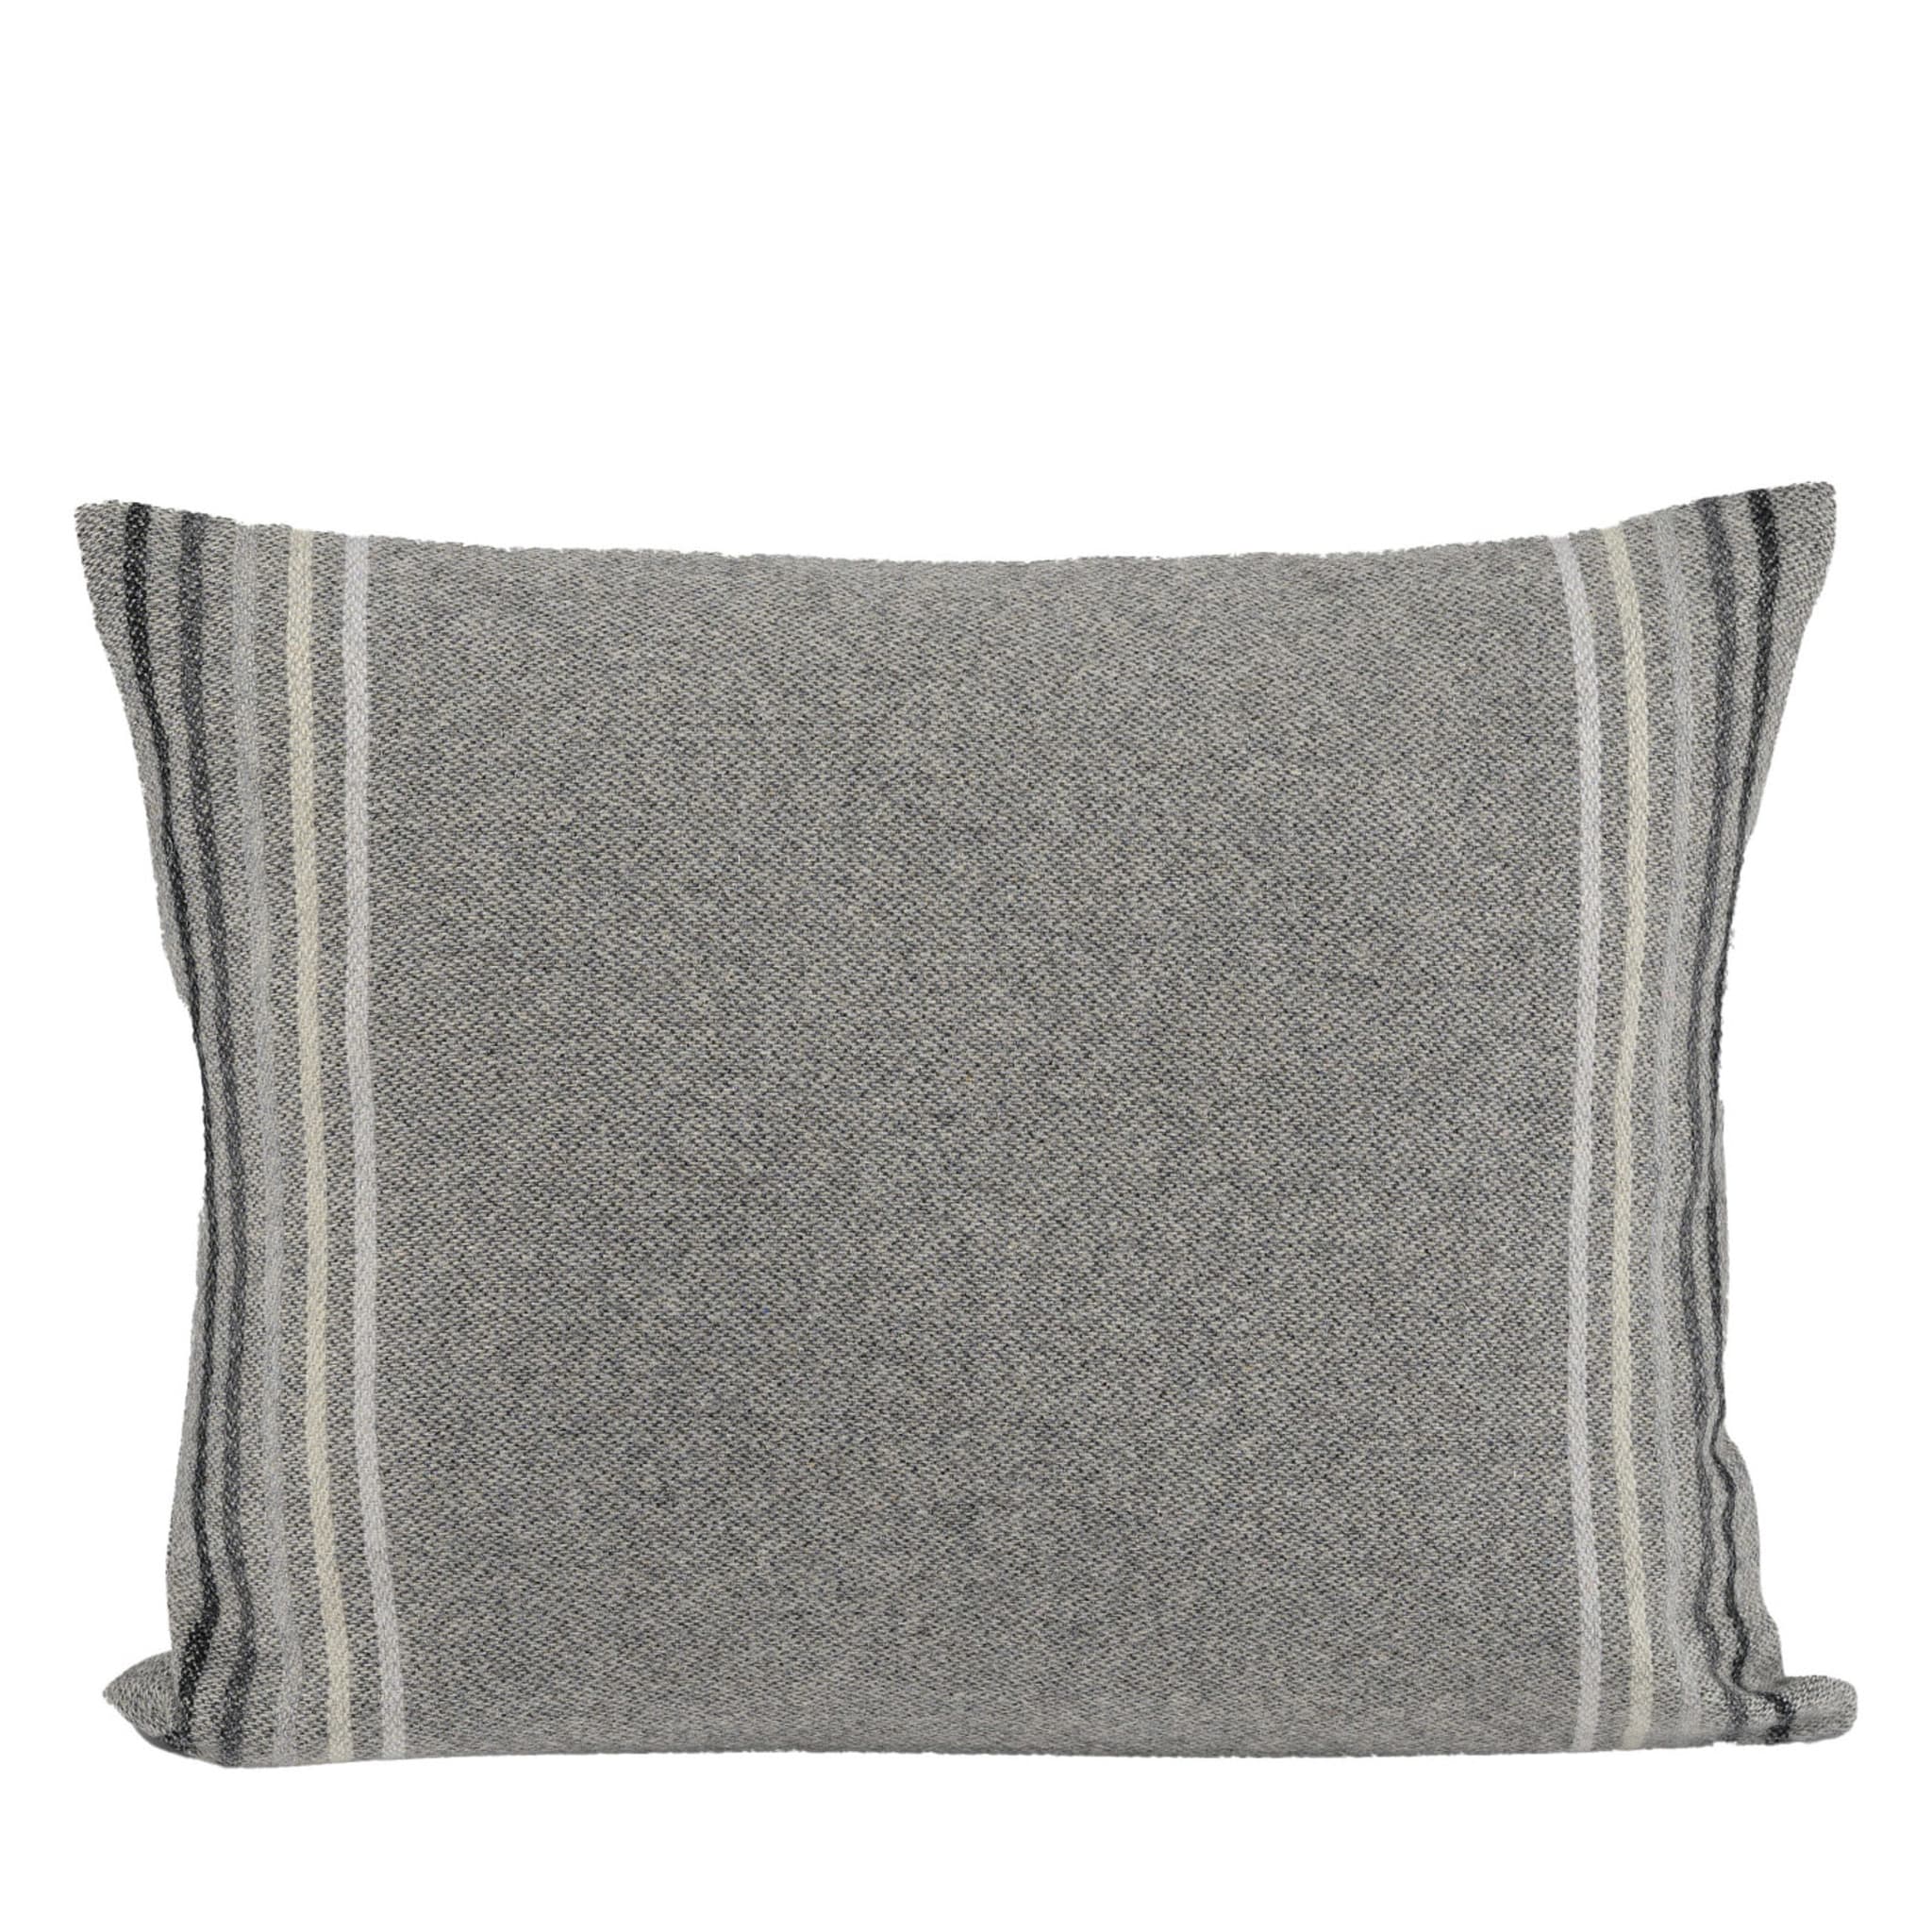 Cuscino Tailor rettangolare grigio - Vista principale